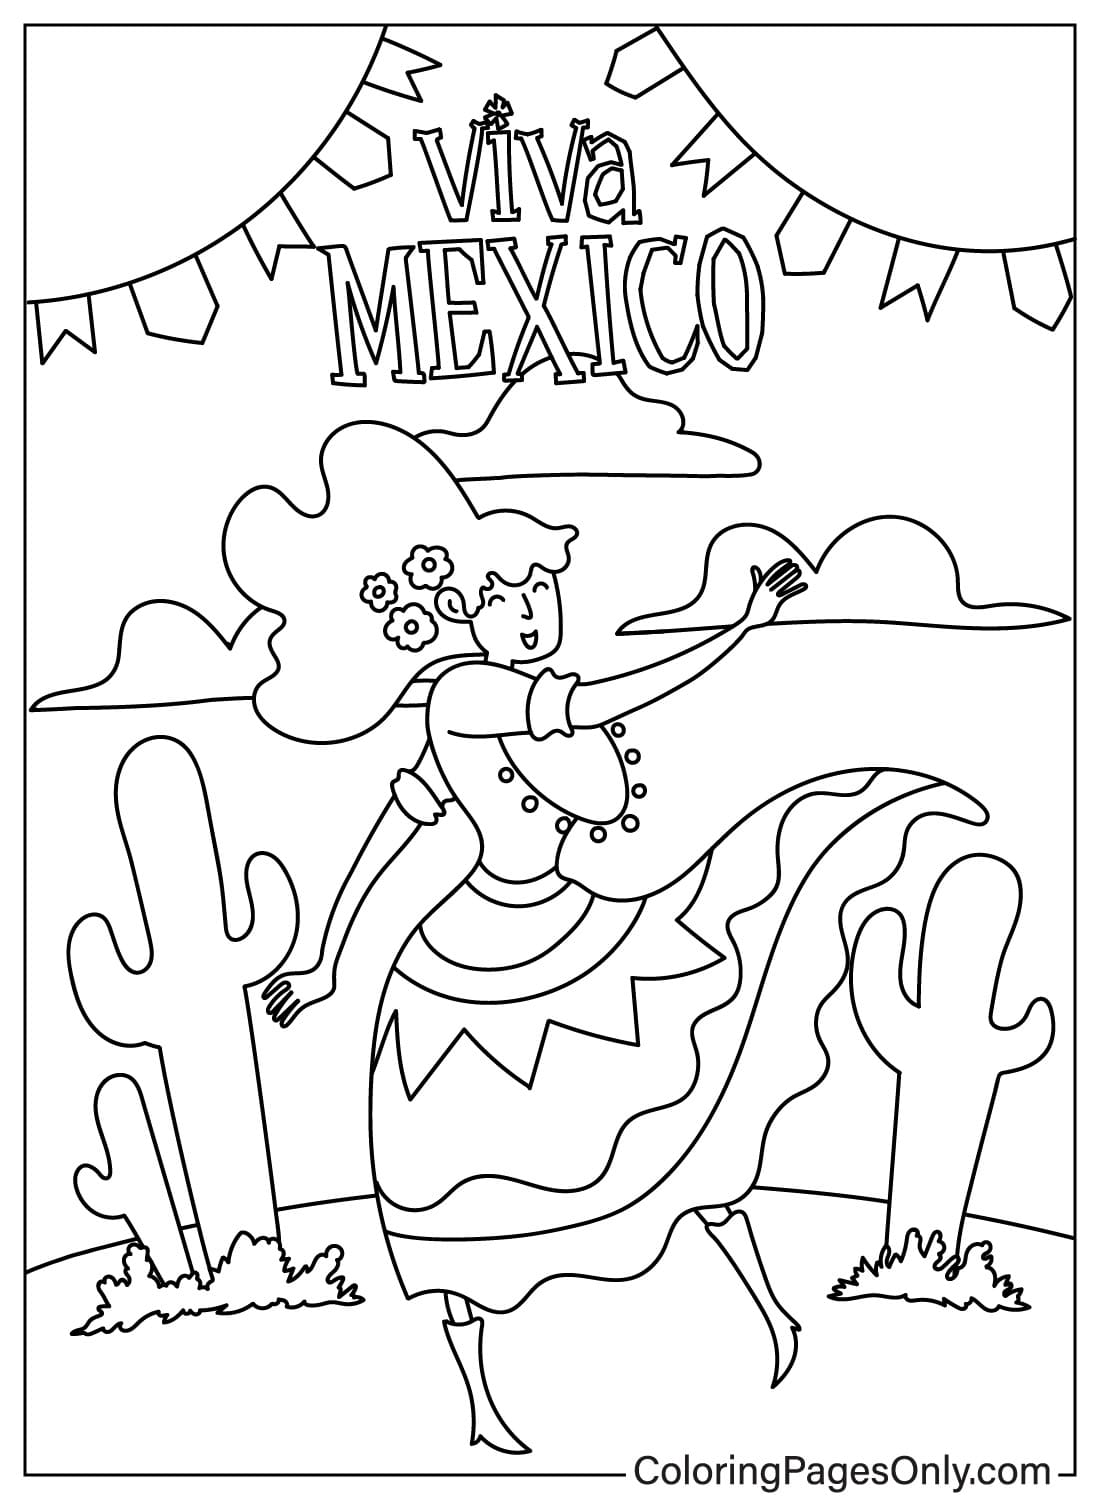 احتفال سينكو دي مايو مع امرأة ترتدي الملابس التقليدية المكسيكية وترقص من سينكو دي مايو